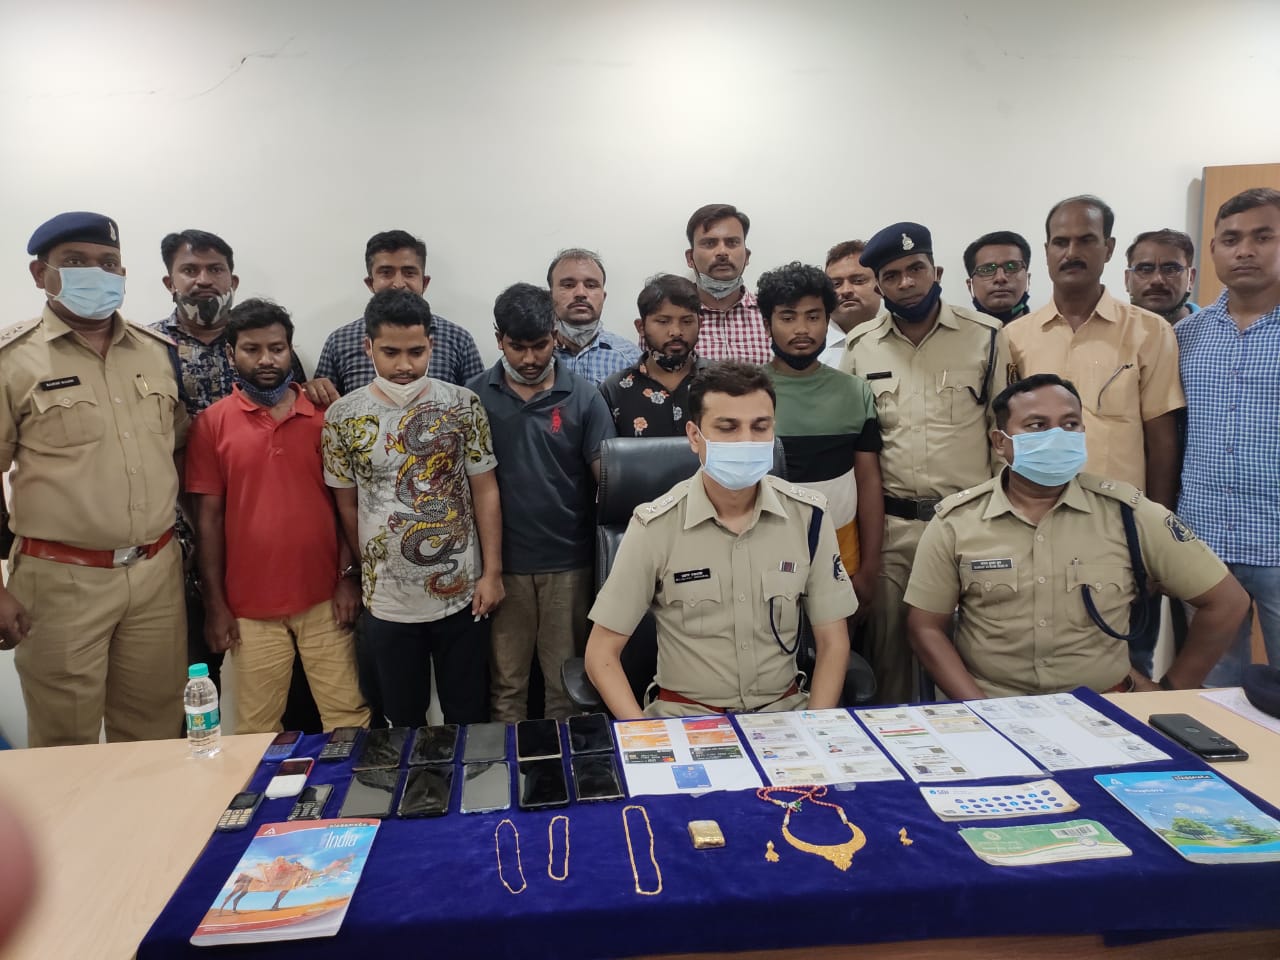 आभूषण कारीगर बनकर खरा सोना चोरी करने वाले अंर्तराज्जीय गैंग के पांच सदस्यों को दुर्ग पुलिस ने मुंबई से किया गिरफ्तार, आधा किलो सोना, 15 मोबाइल 18 फर्जी आधार कार्ड सहित 25 बैंक खाते किए गए फिज